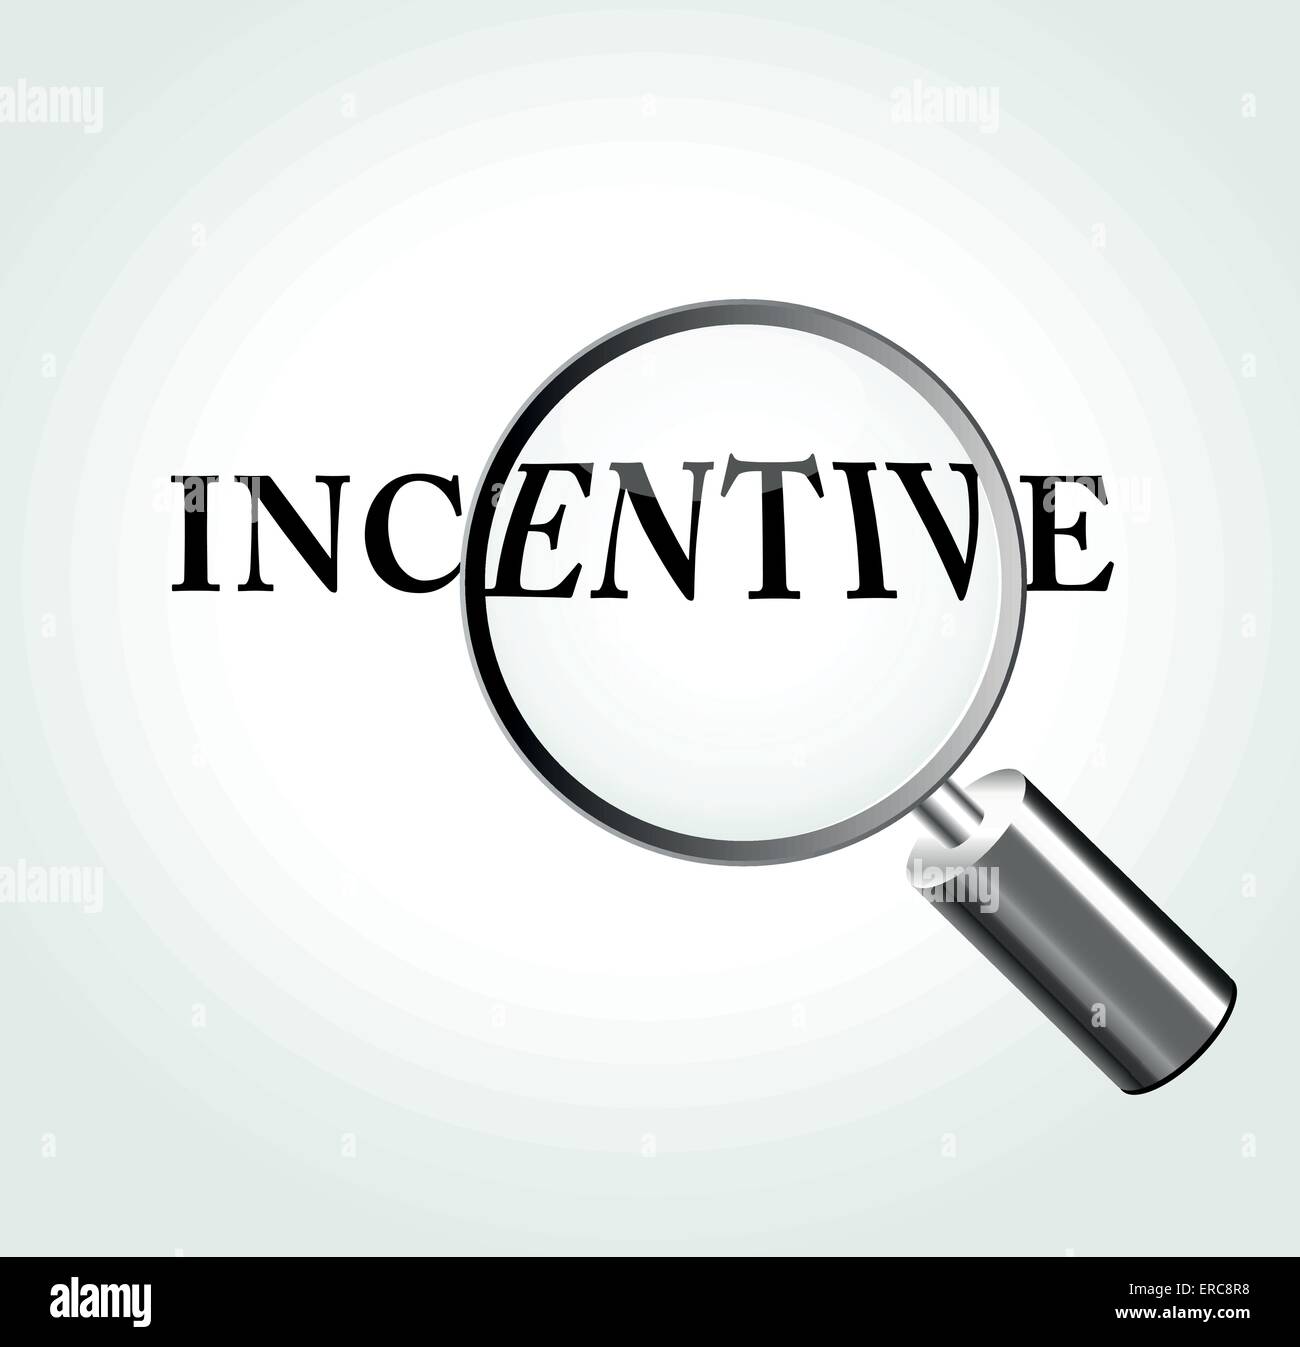 Illustrazione Vettoriale del concetto di incentivazione con ingrandimento Illustrazione Vettoriale